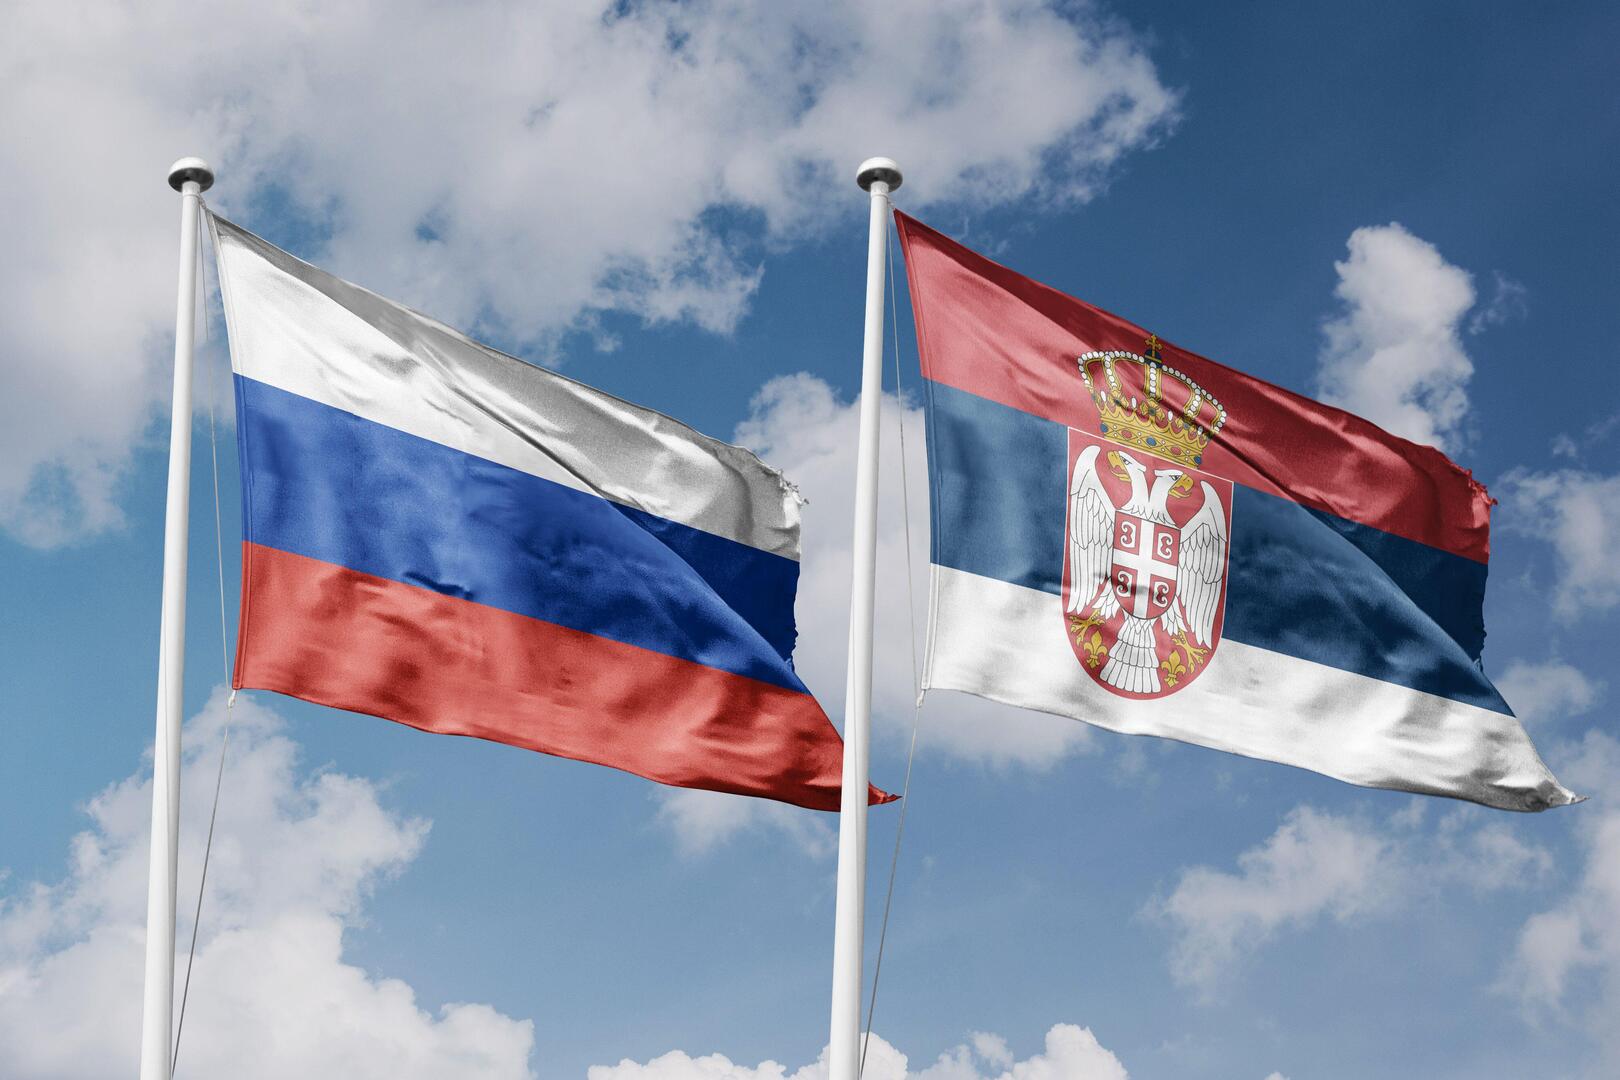 الدفاع الصربية تنفي تقارير عن إمدادها أوكرانيا بالذخائر